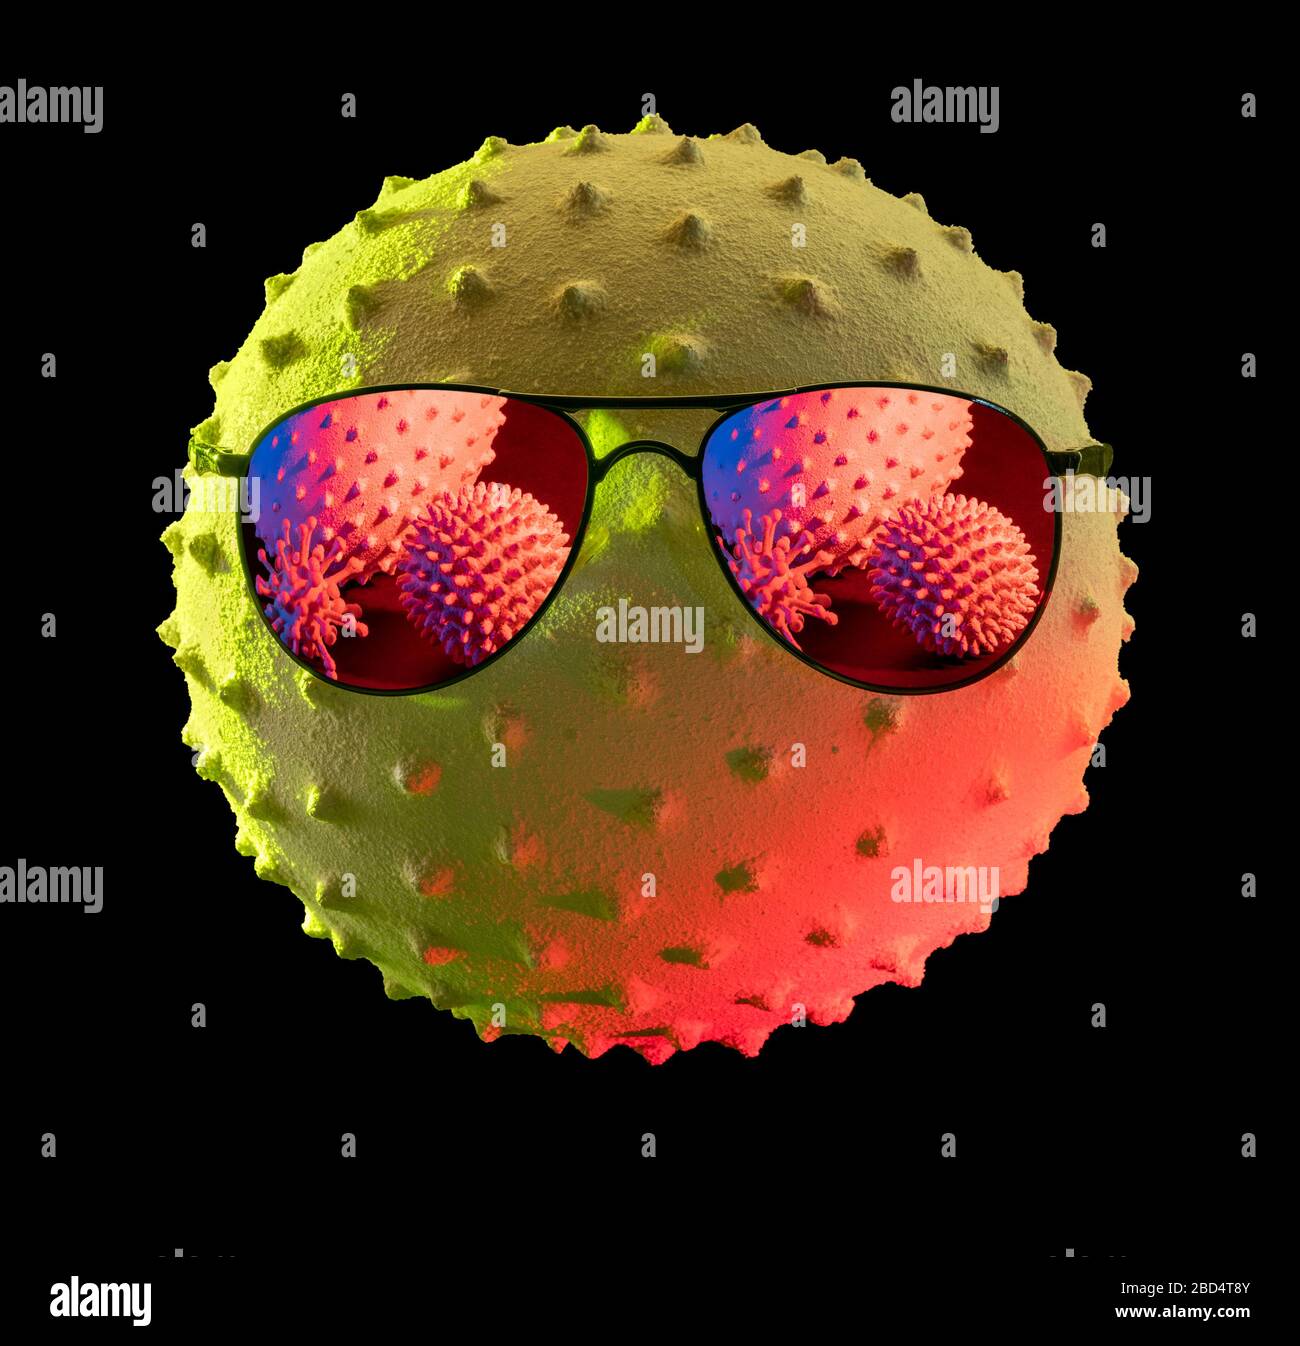 primo piano che mostra un colorato virus simbolico illuminato indossando occhiali da sole sul retro scuro Foto Stock